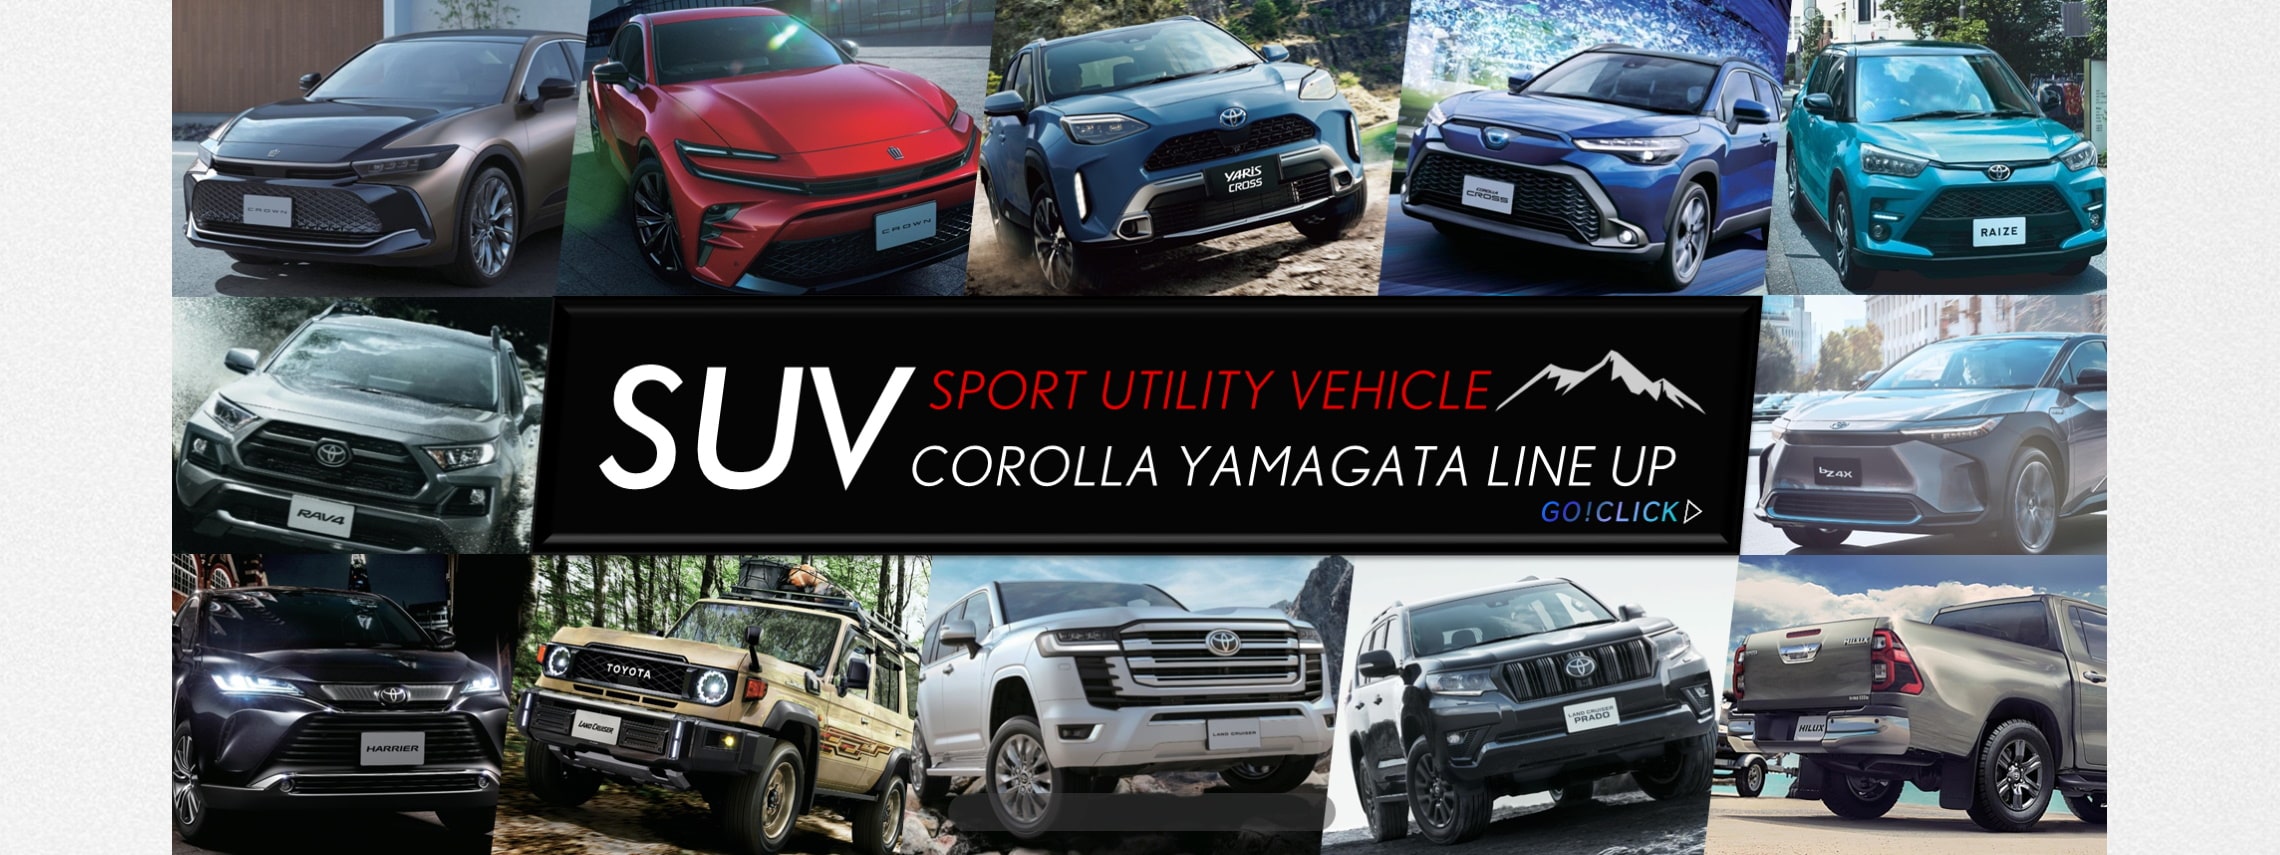 トヨタカローラ山形のSUVシリーズご紹介ページです。